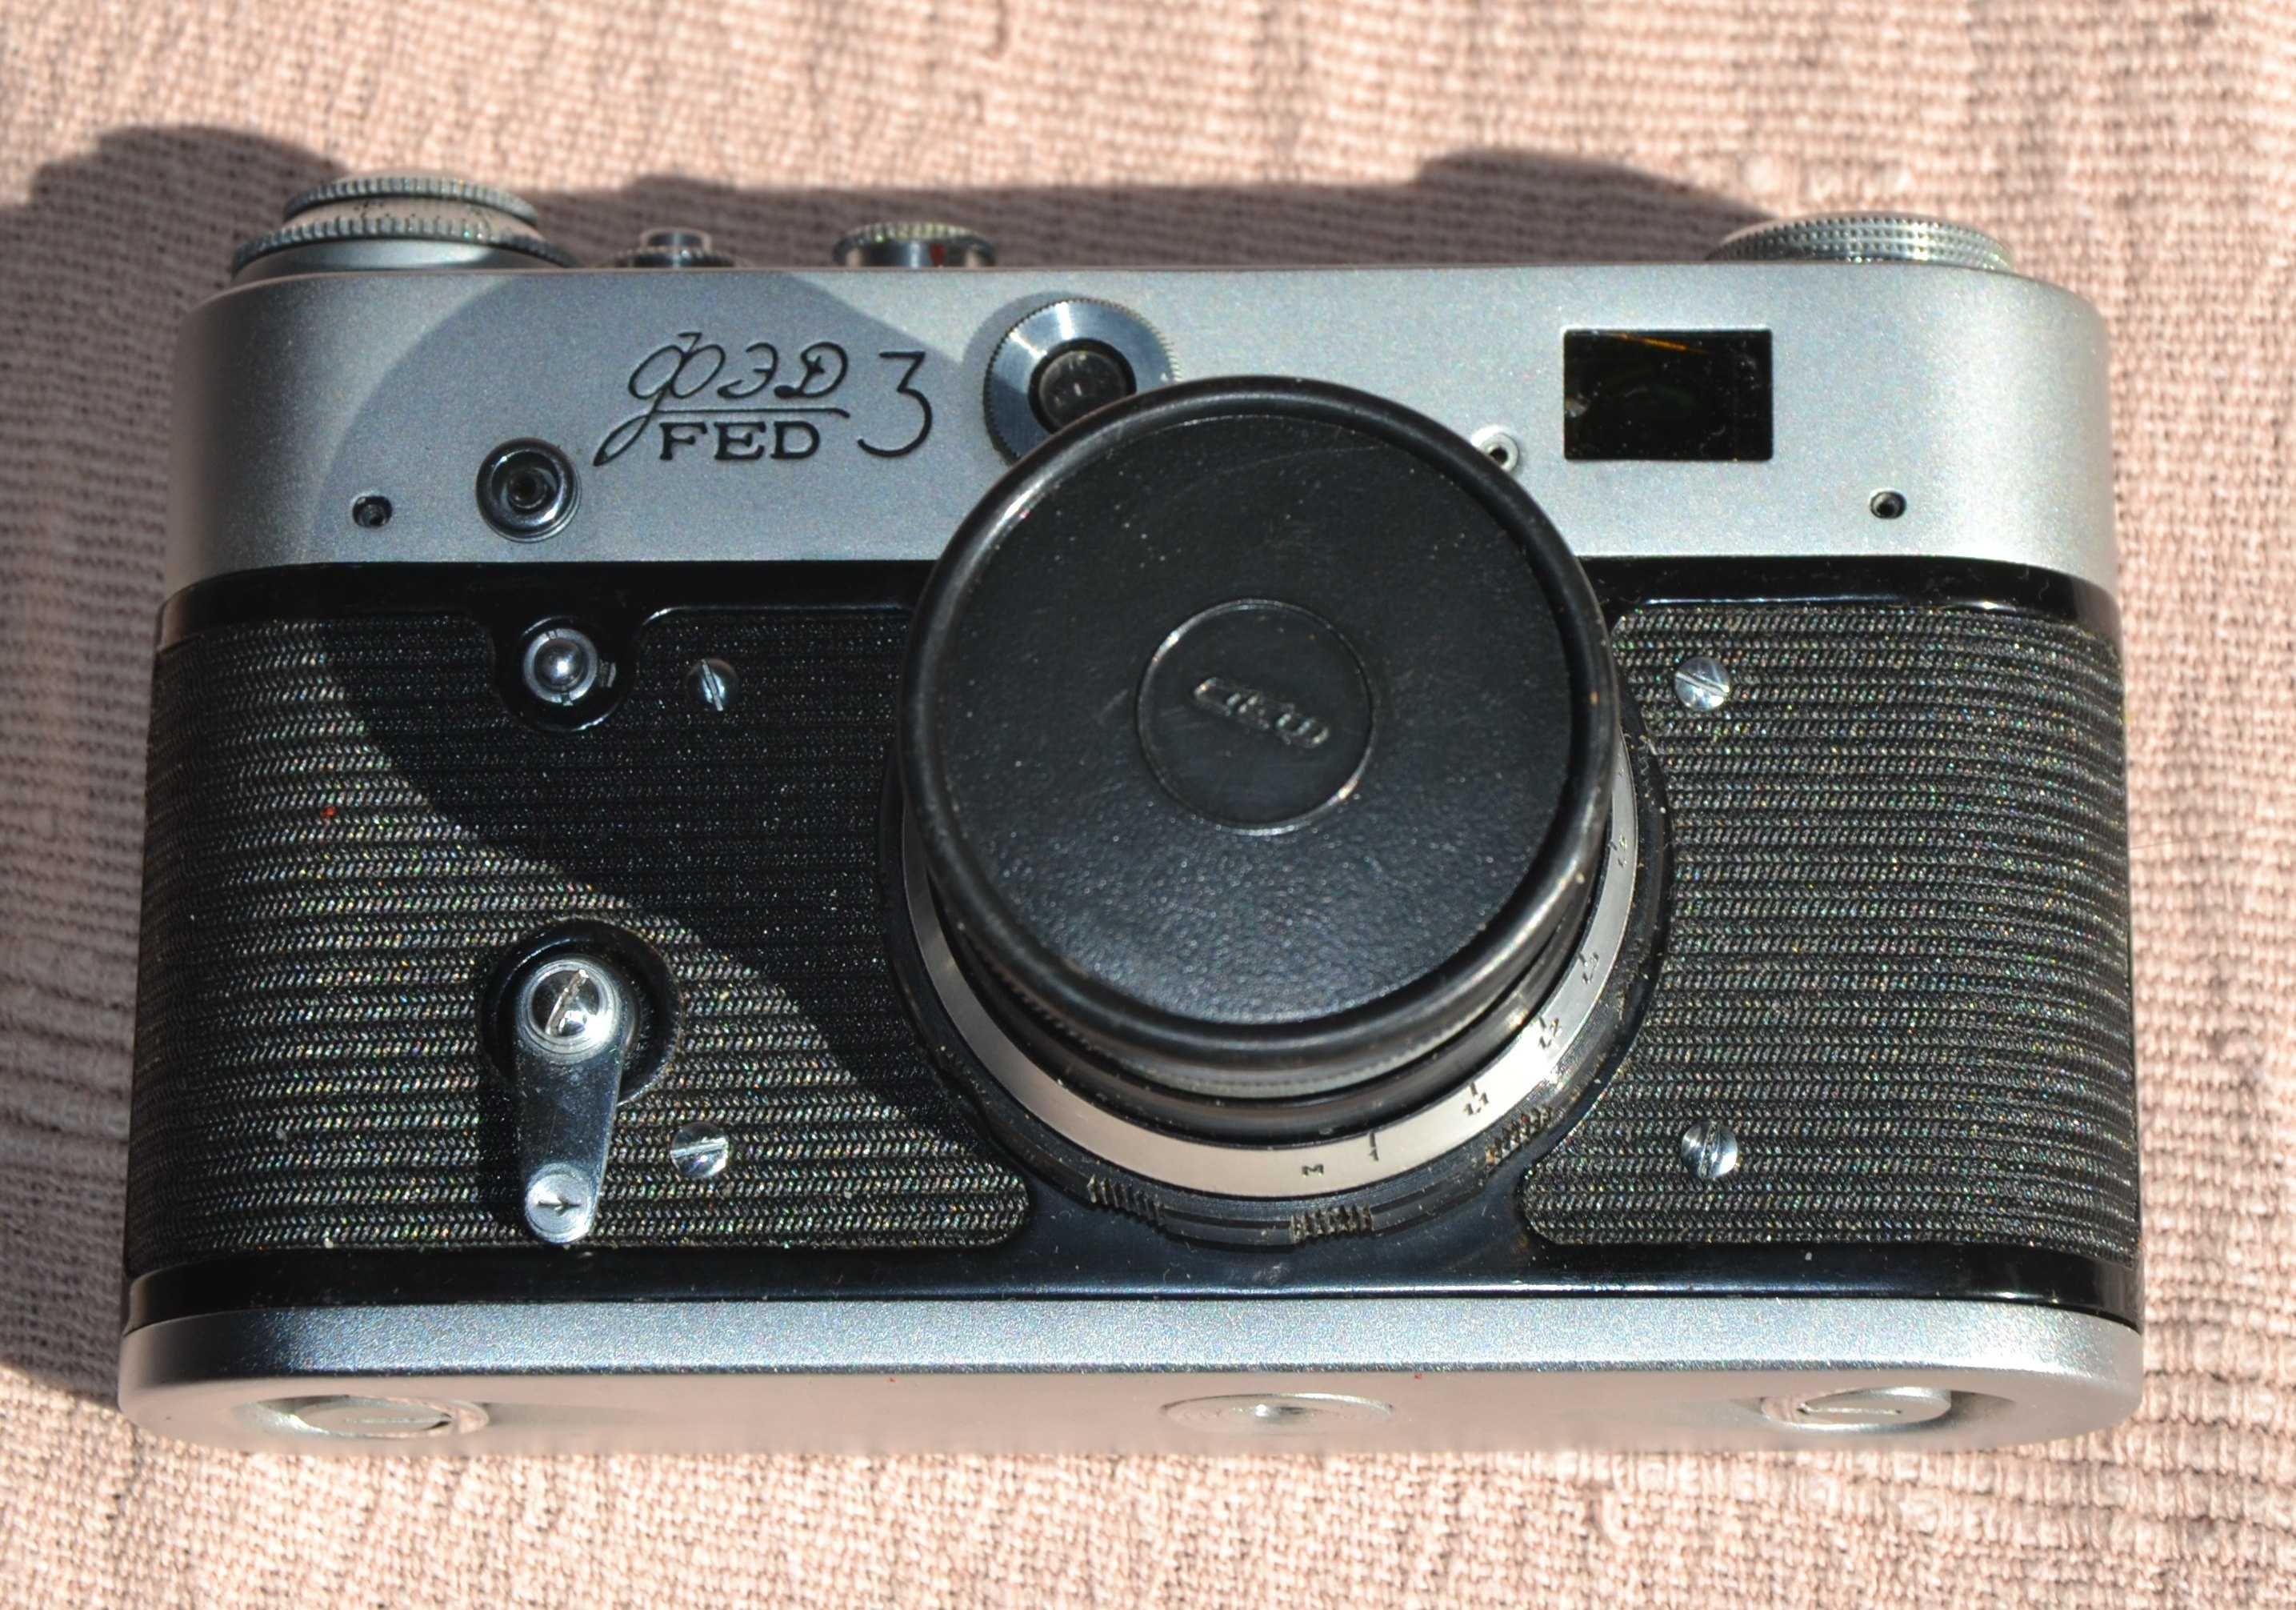 Kolekcjonerski aparat FED 3 analogowy